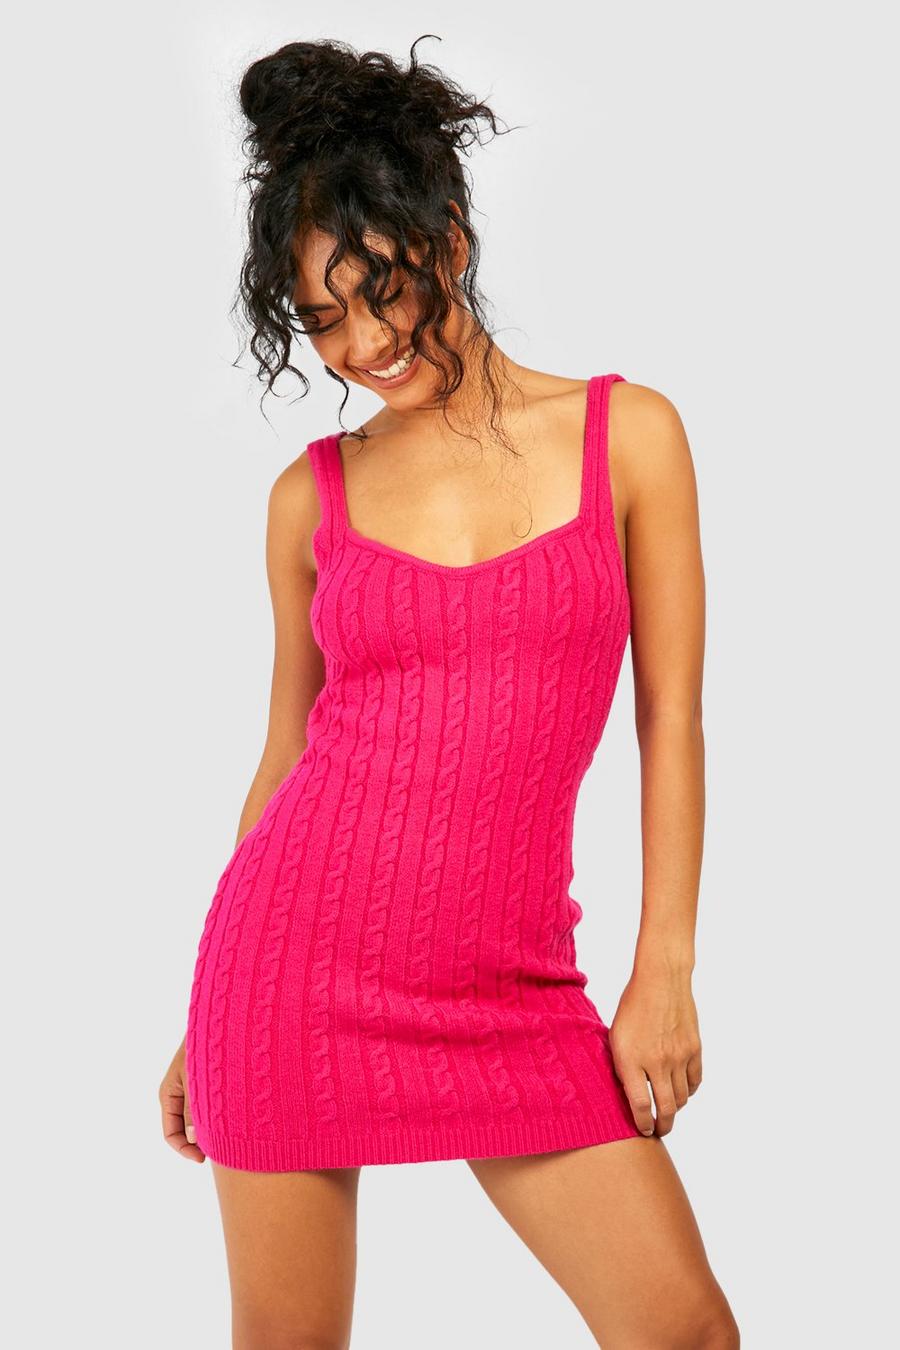 boohoo Womens Oversized Wide Sleeve Sweater Dress - Beige Xs